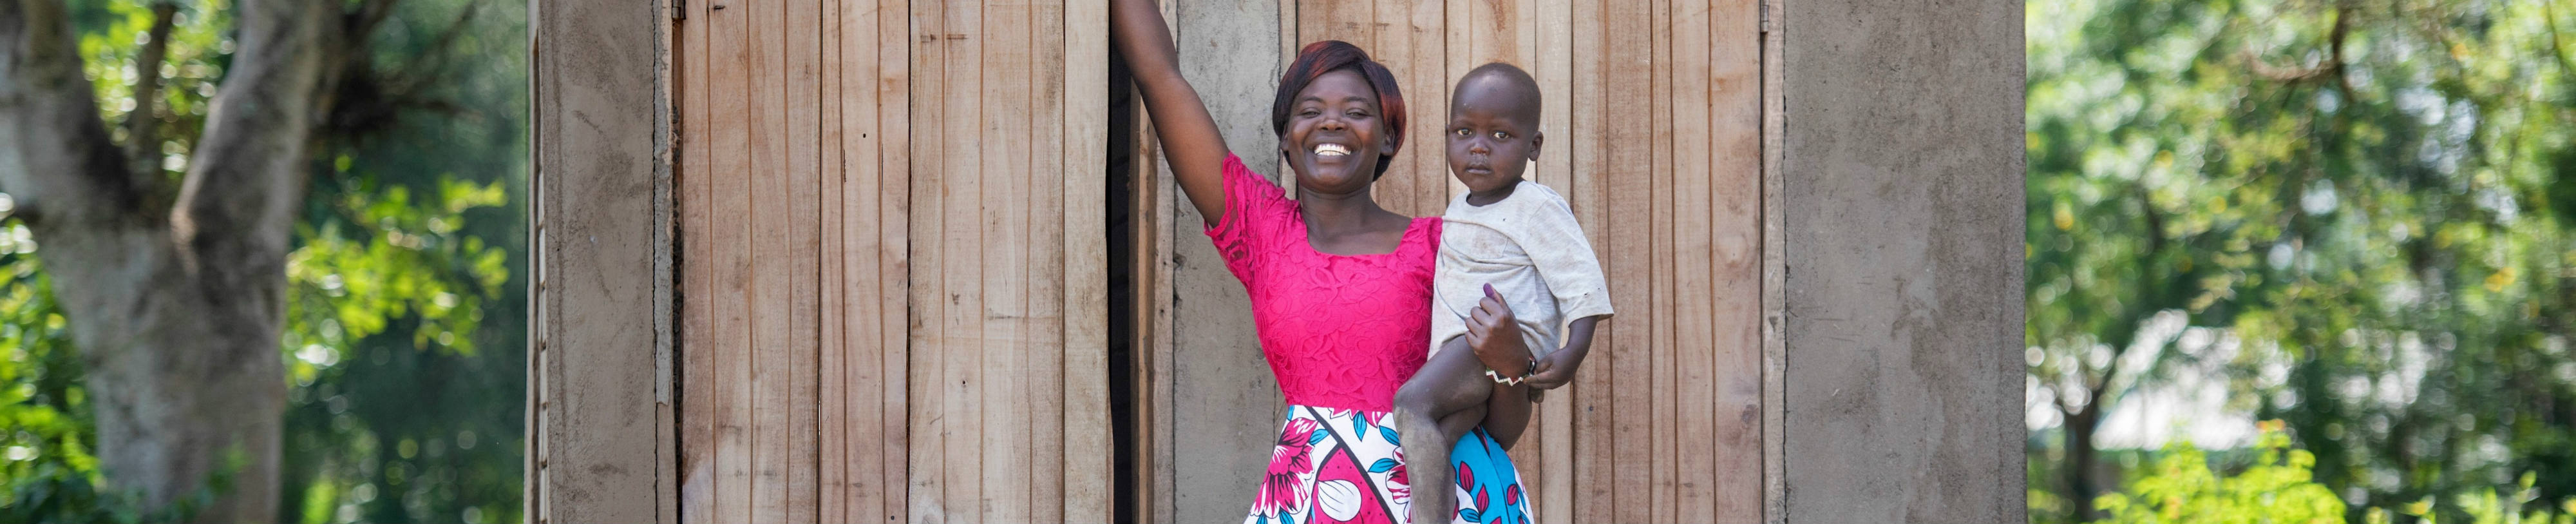 Afrikaanse vrouw is gelukkig met haar gezonde baby